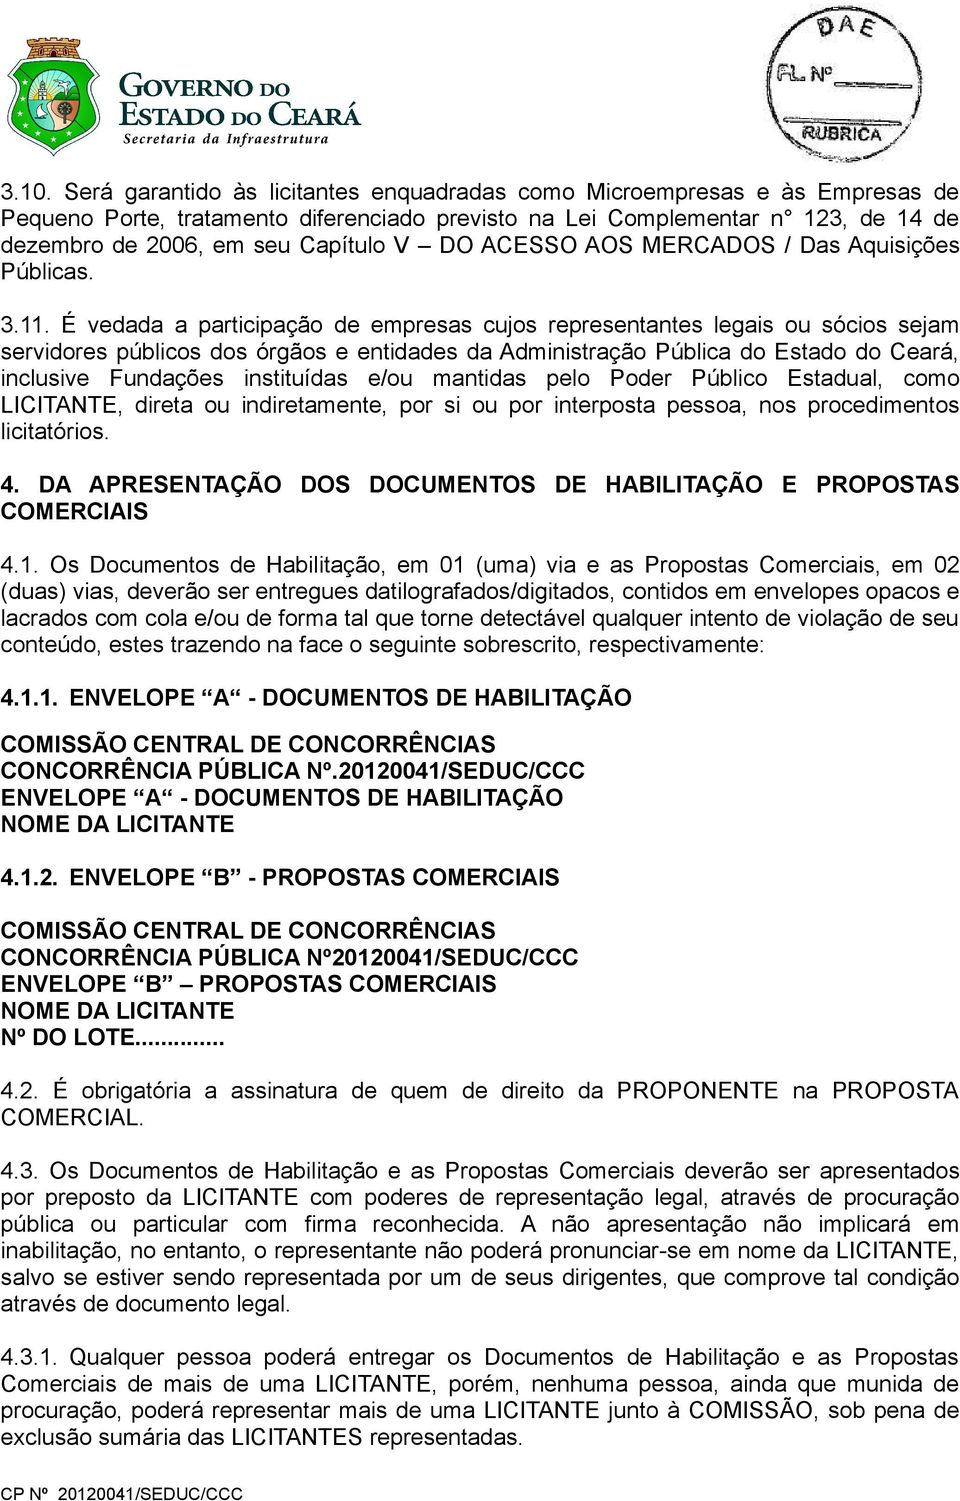 É vedada a participação de empresas cujos representantes legais ou sócios sejam servidores públicos dos órgãos e entidades da Administração Pública do Estado do Ceará, inclusive Fundações instituídas